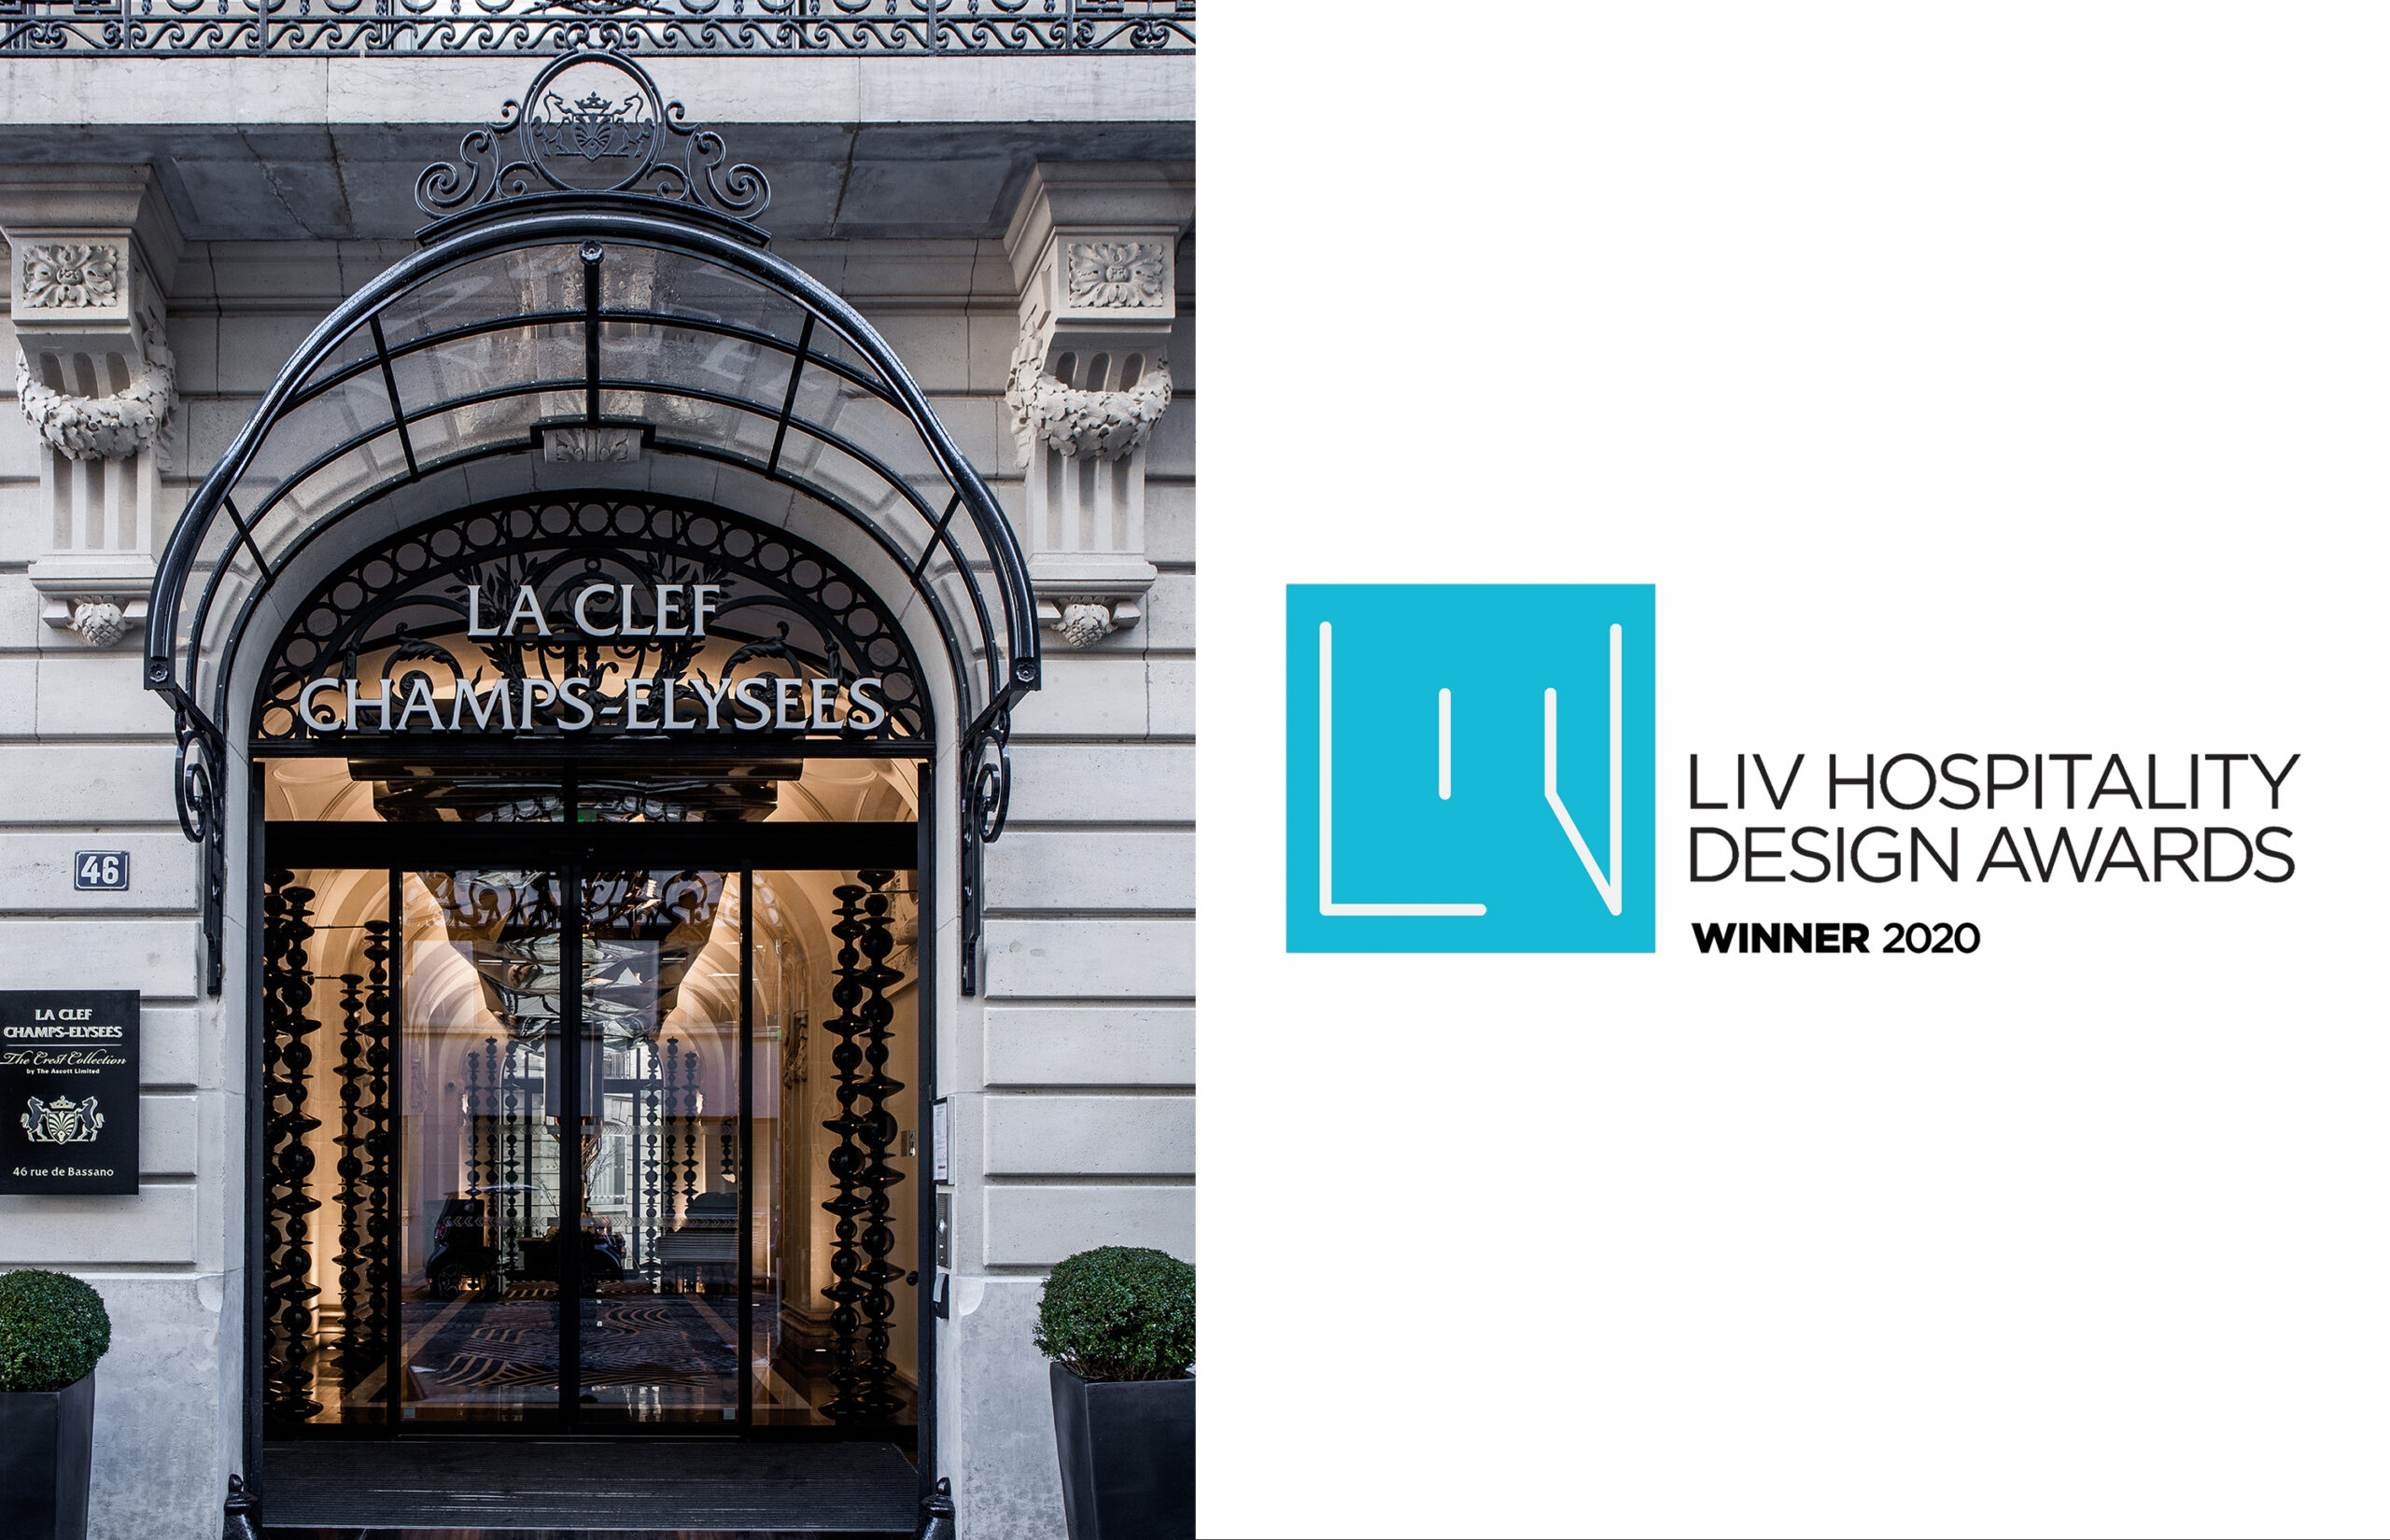 LIV Hospitality Design Awards 2020 pour l'hôtel La Clef Champs-Elysées paris réalisé par le studio d'architecture d'intérieur jean-philippe nuel